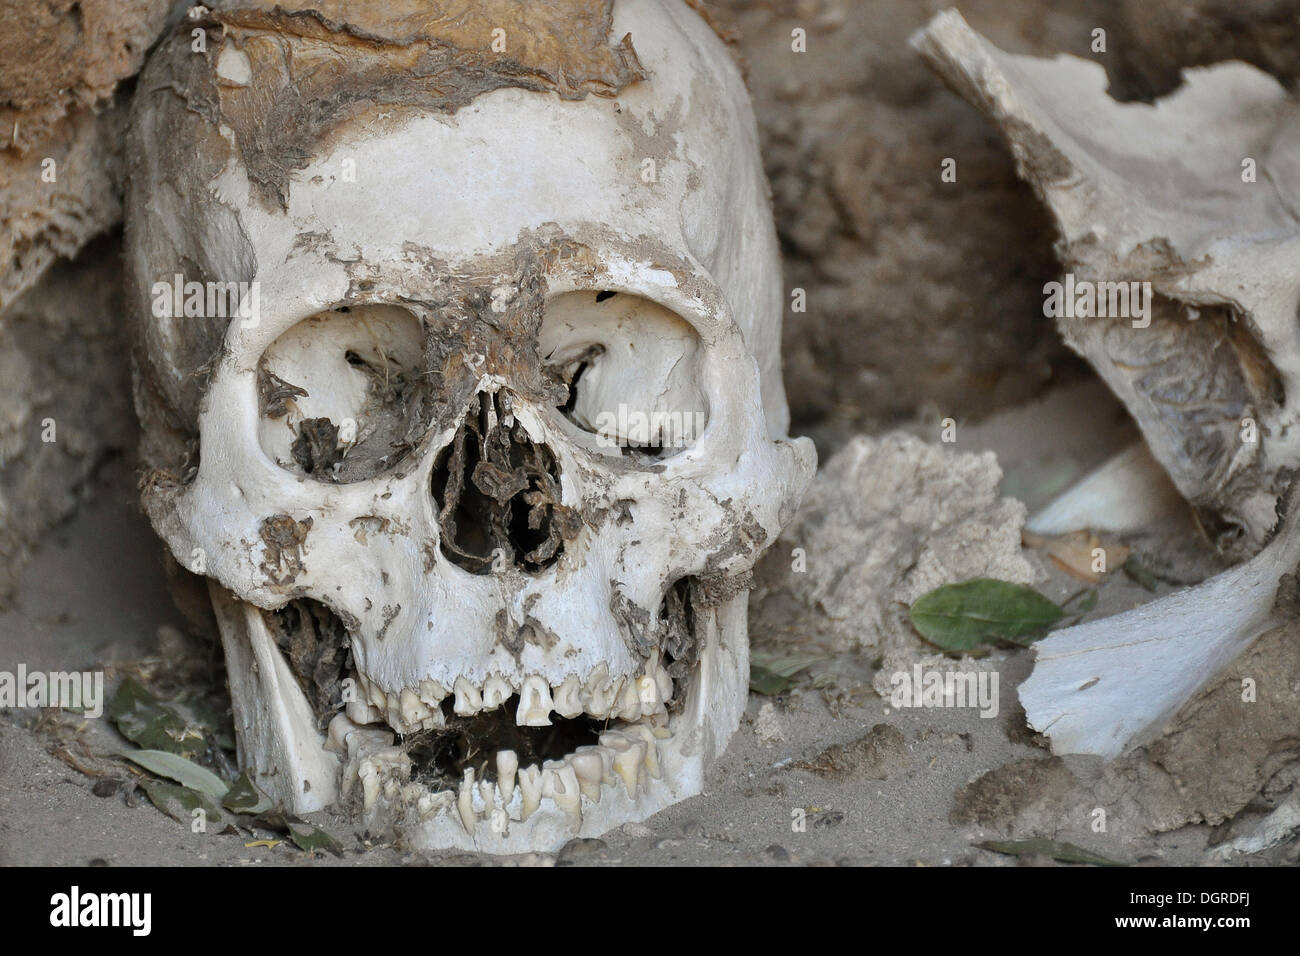 Il cranio con una foglia di coca su un cimitero delle mummie, chauchilla, nei pressi di nasca, il deserto di Atacama, Perù, Sud America Foto Stock